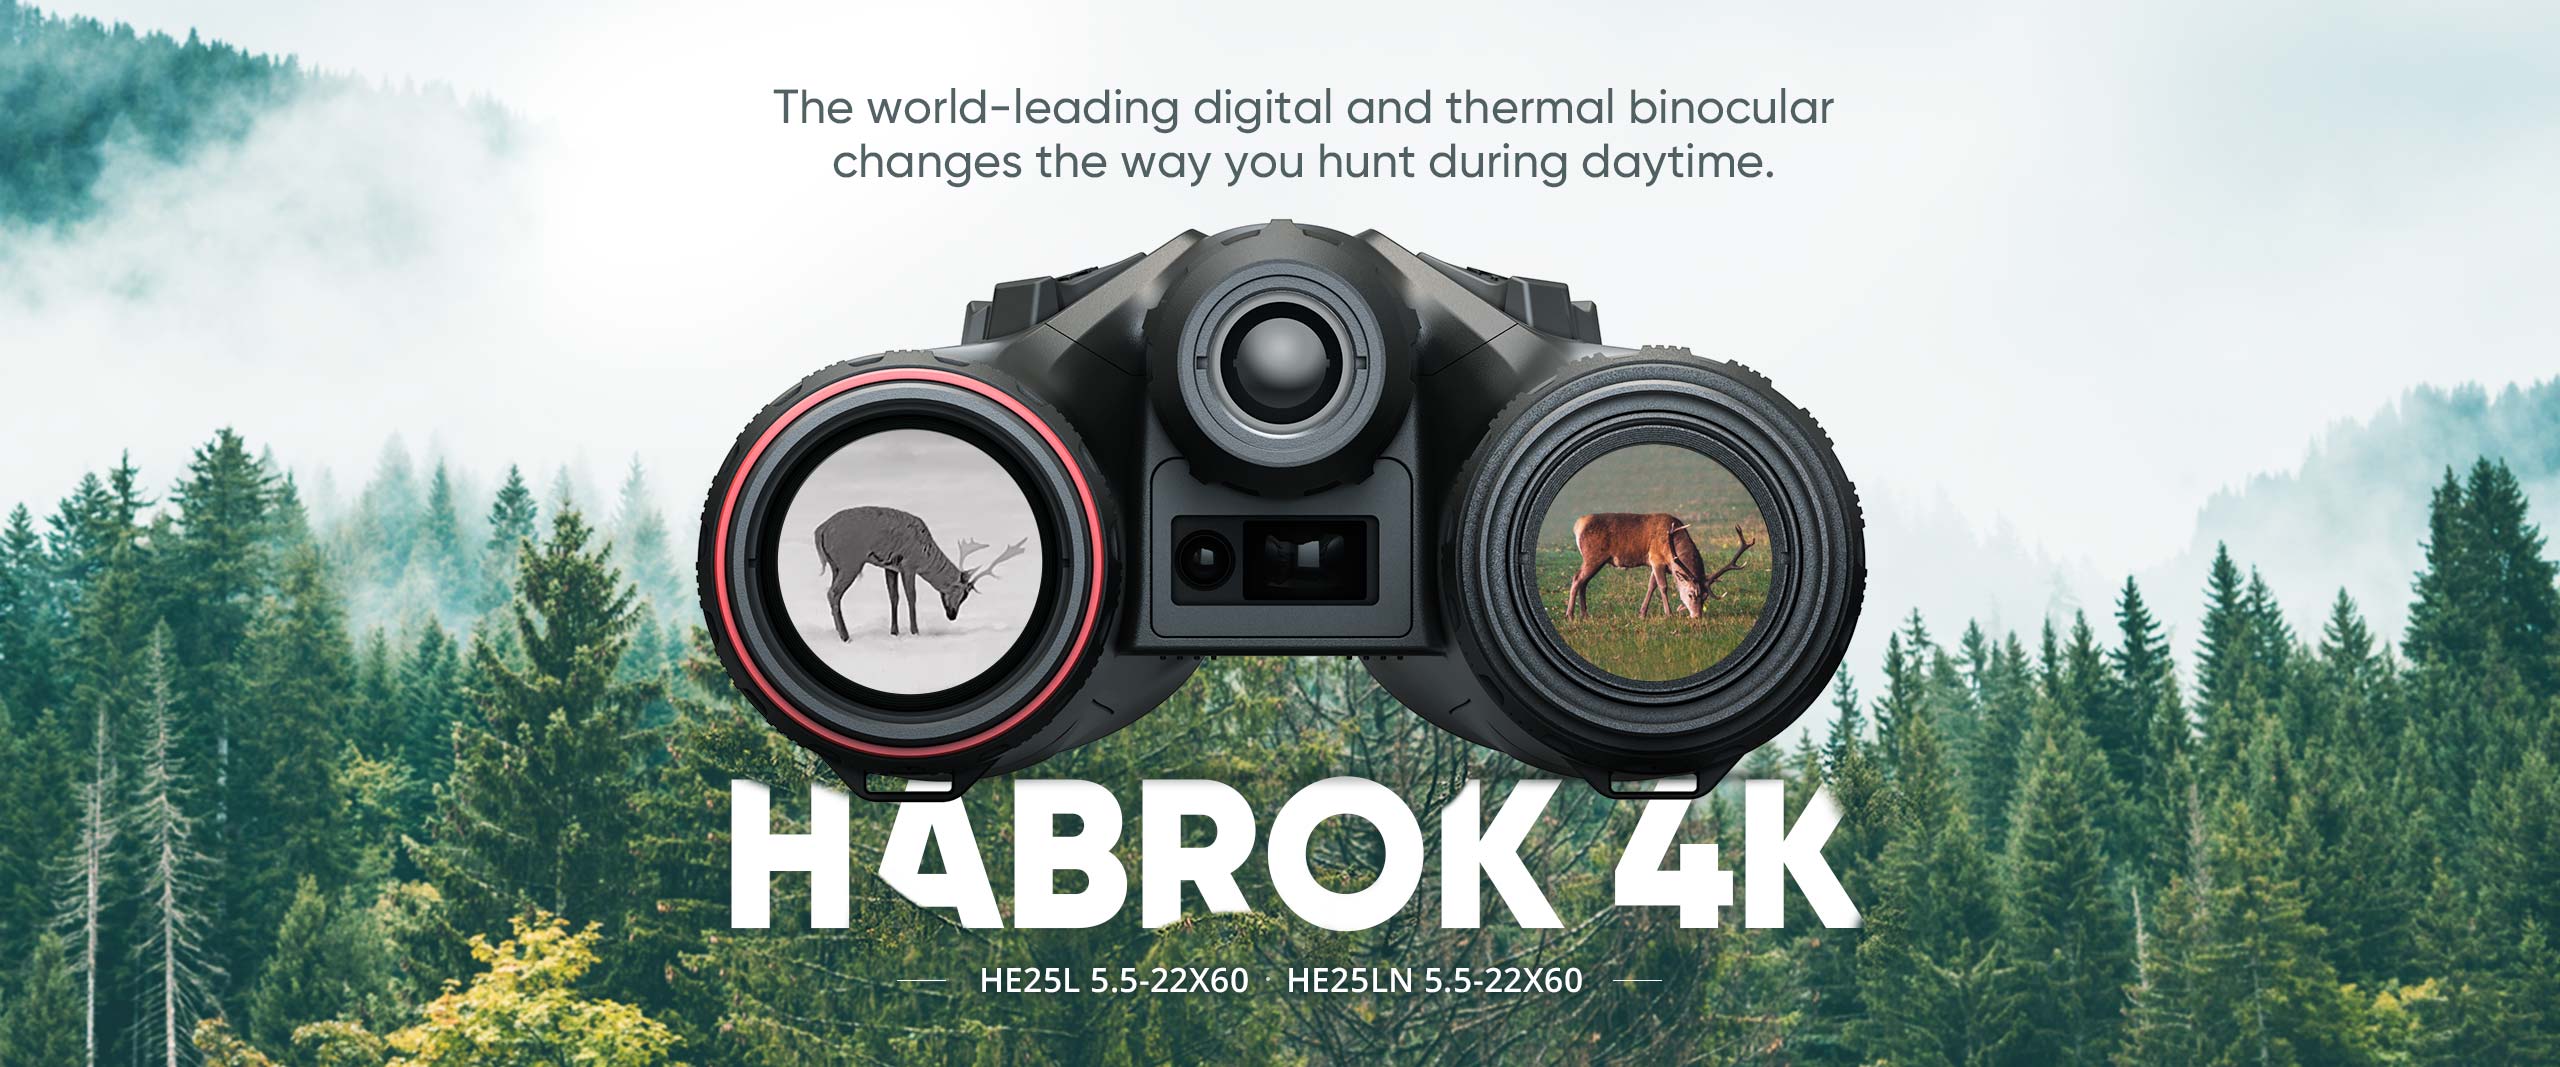 HABROK 4K banner_warm up_PC